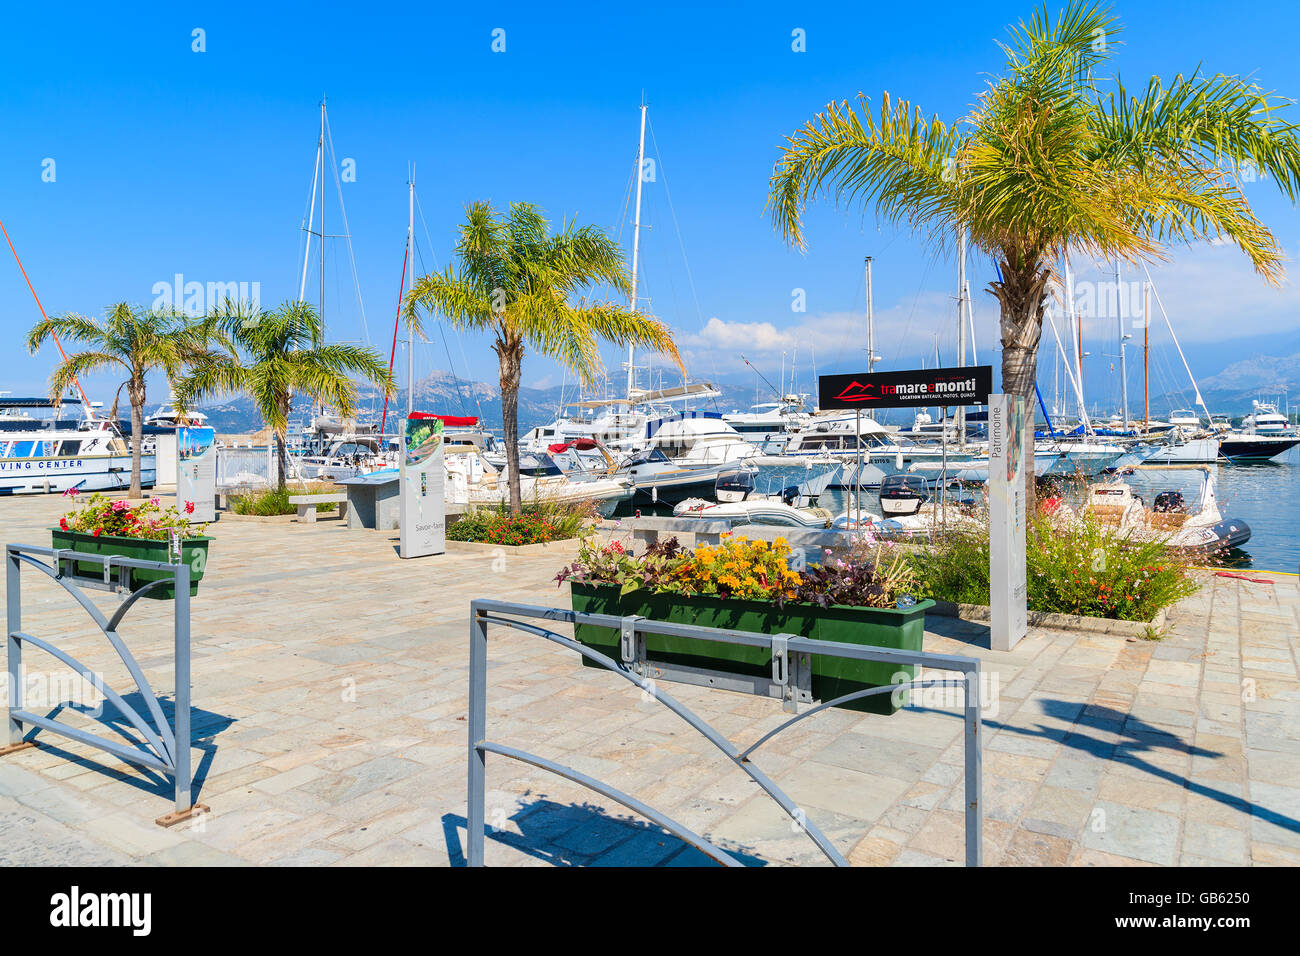 CALVI, Korsika - 28. Juni 2015: Palmen Sie Promenade im Hafen von Calvi. Diese Stadt hat luxuriöse Marina und ist ein sehr Bevölkerung Stockfoto